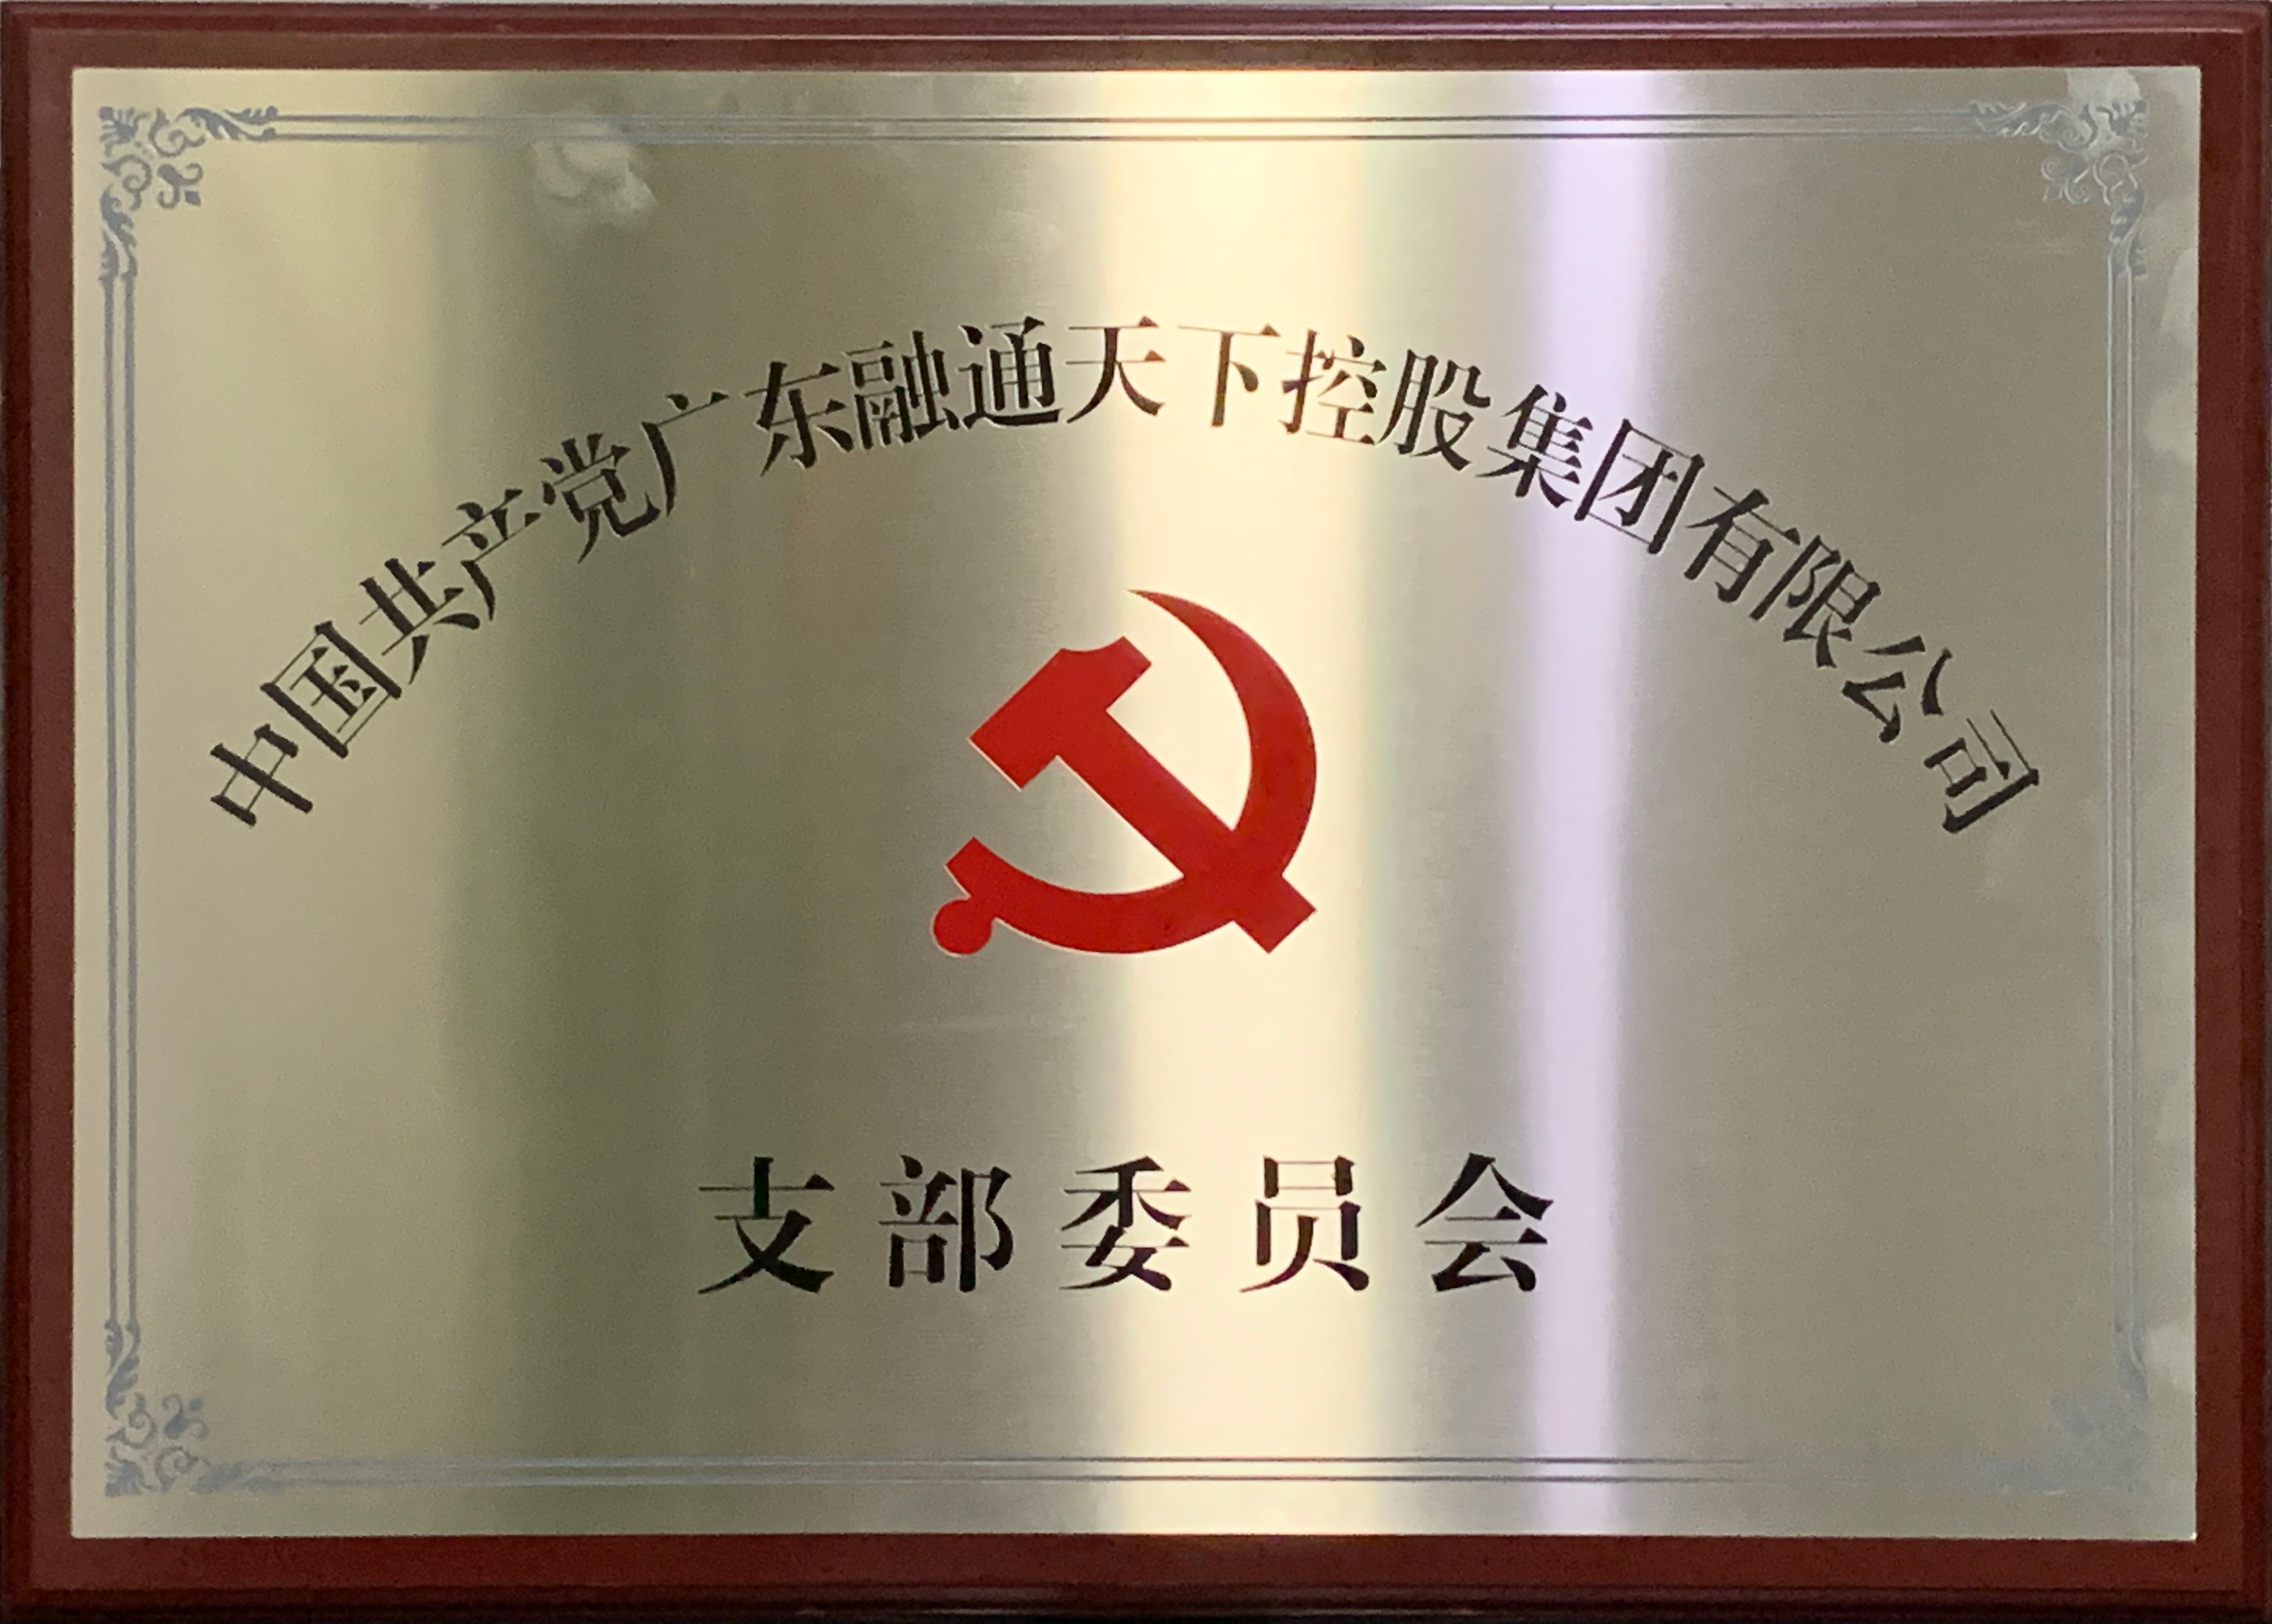 中共广东融通天下控股集团有限公司支部委员会正式挂牌成立